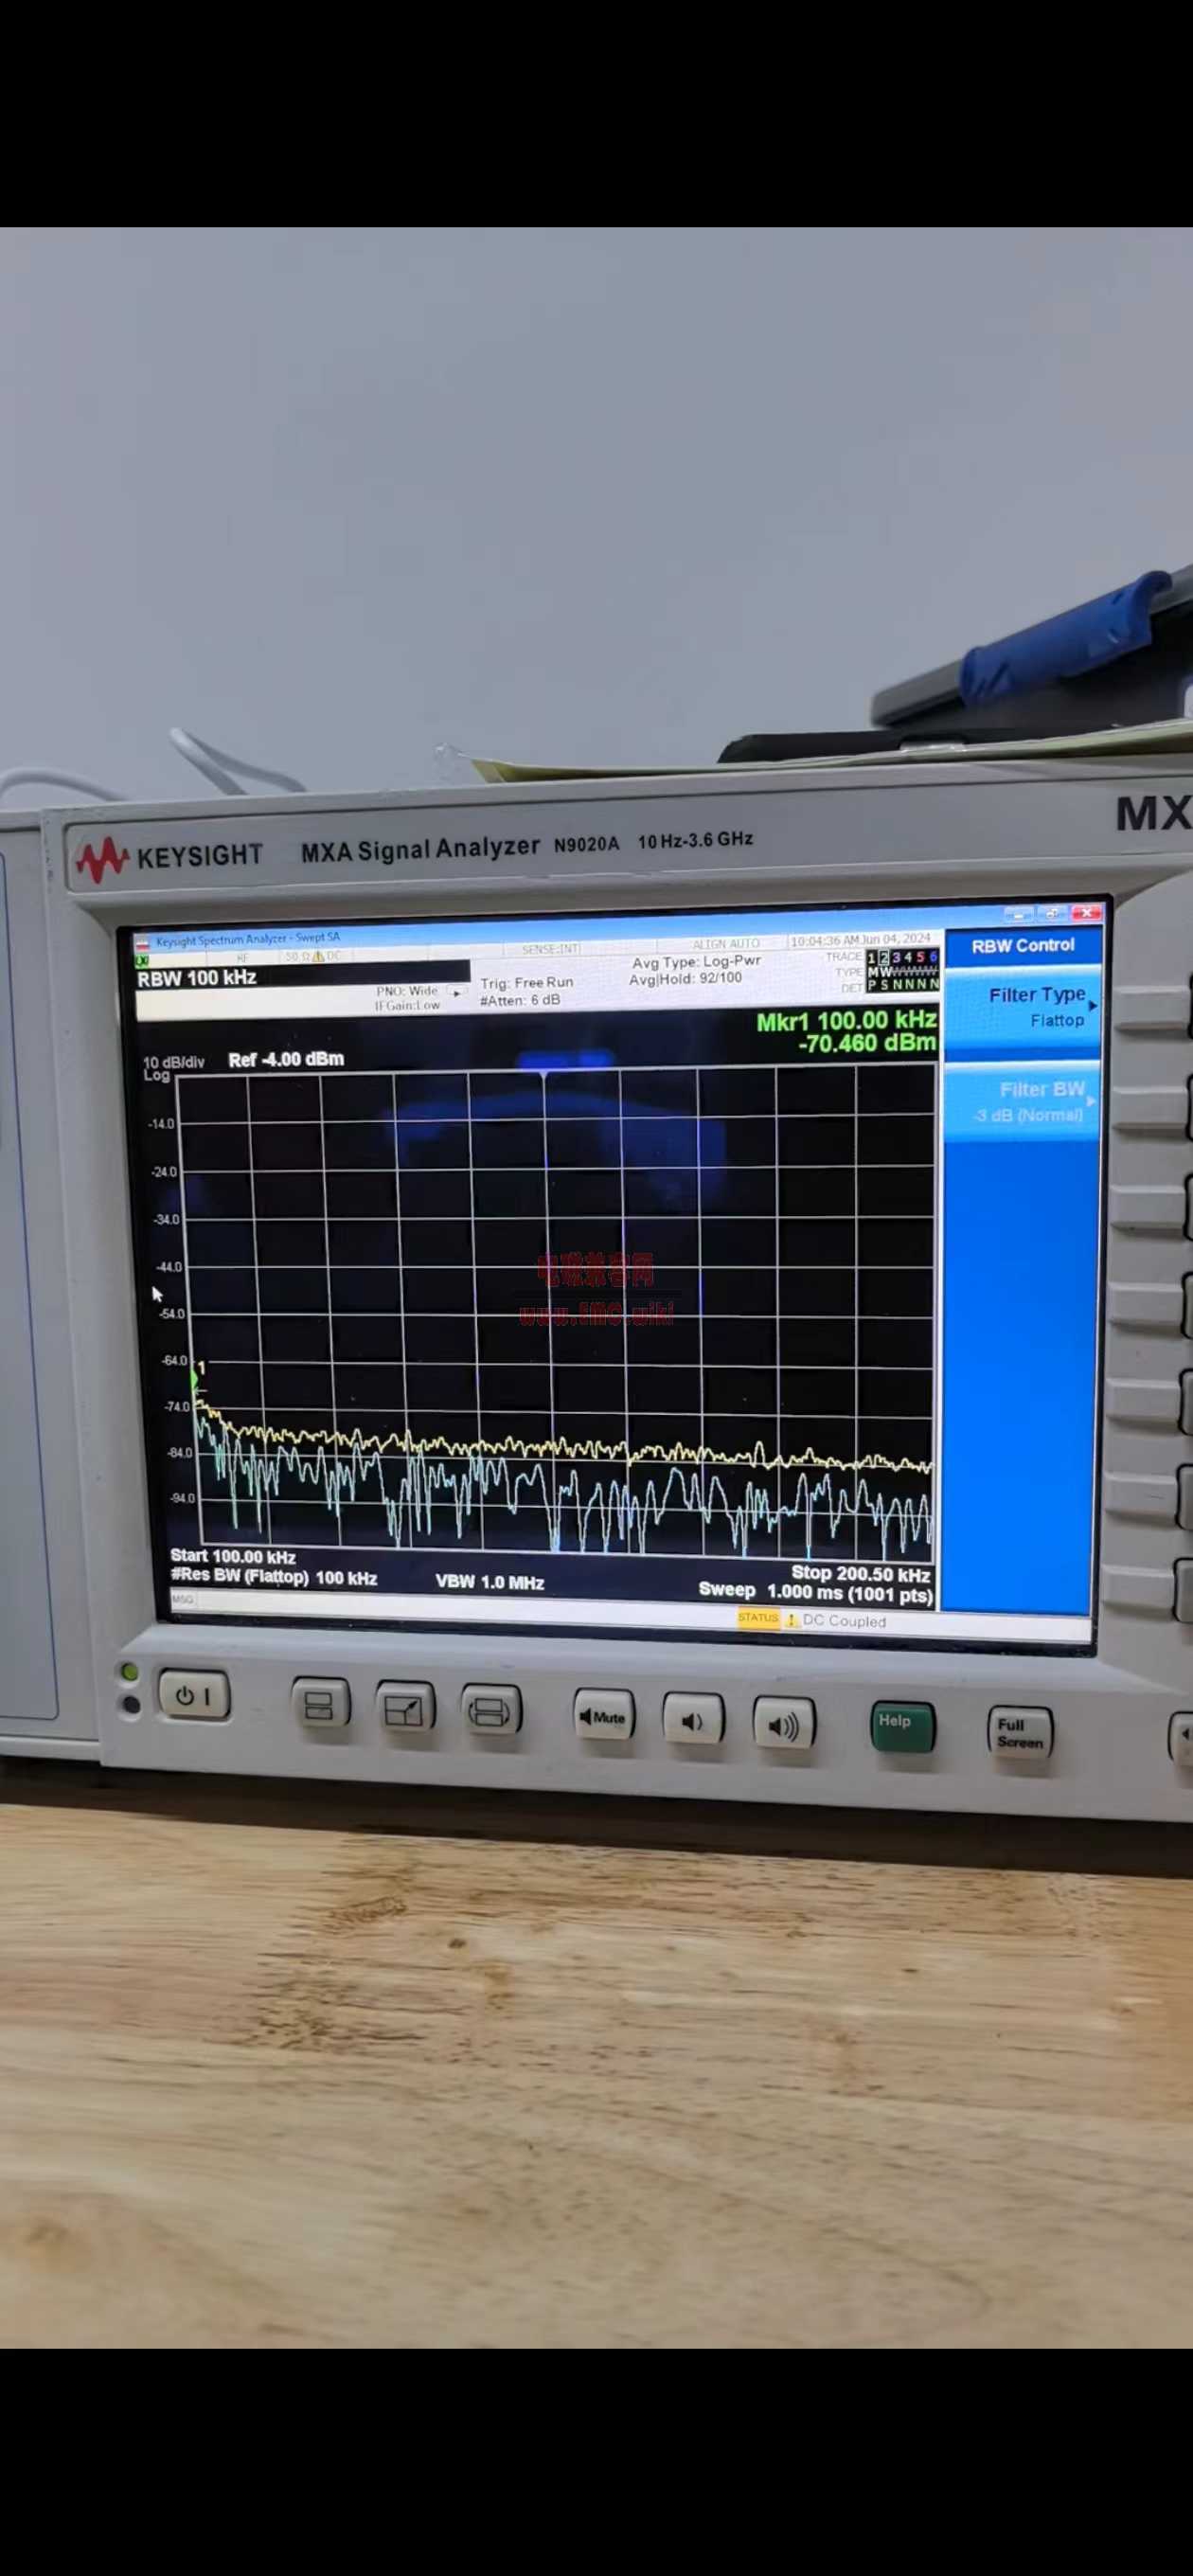 频谱分析仪的RBW滤波器 Flat top filter 和 Gaussian filter，有什么区别？